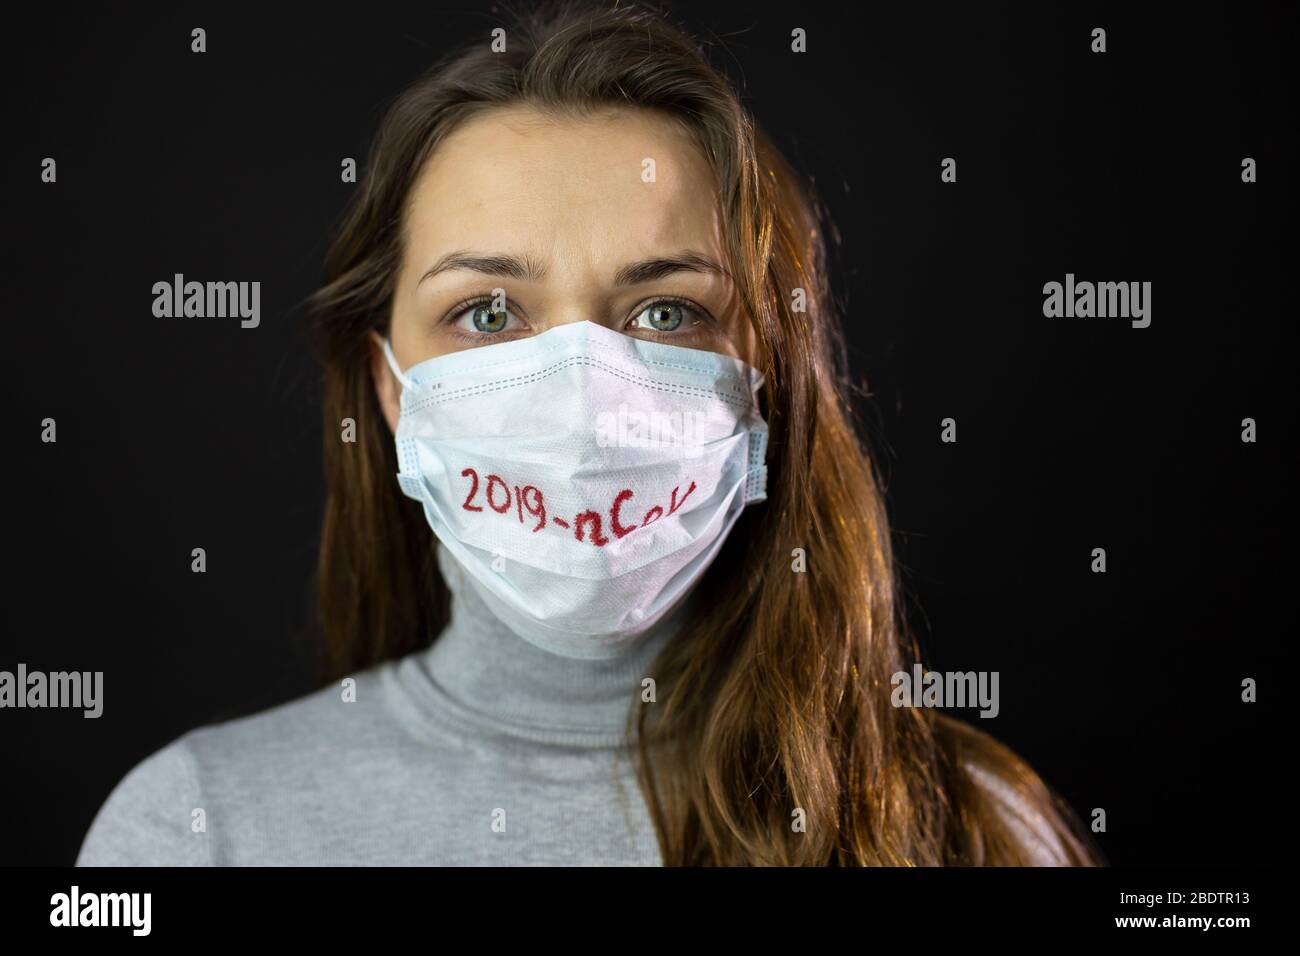 Ritratto di donna spaventata di coronavirus in maschera medica con 2019-ncov scritto Foto Stock